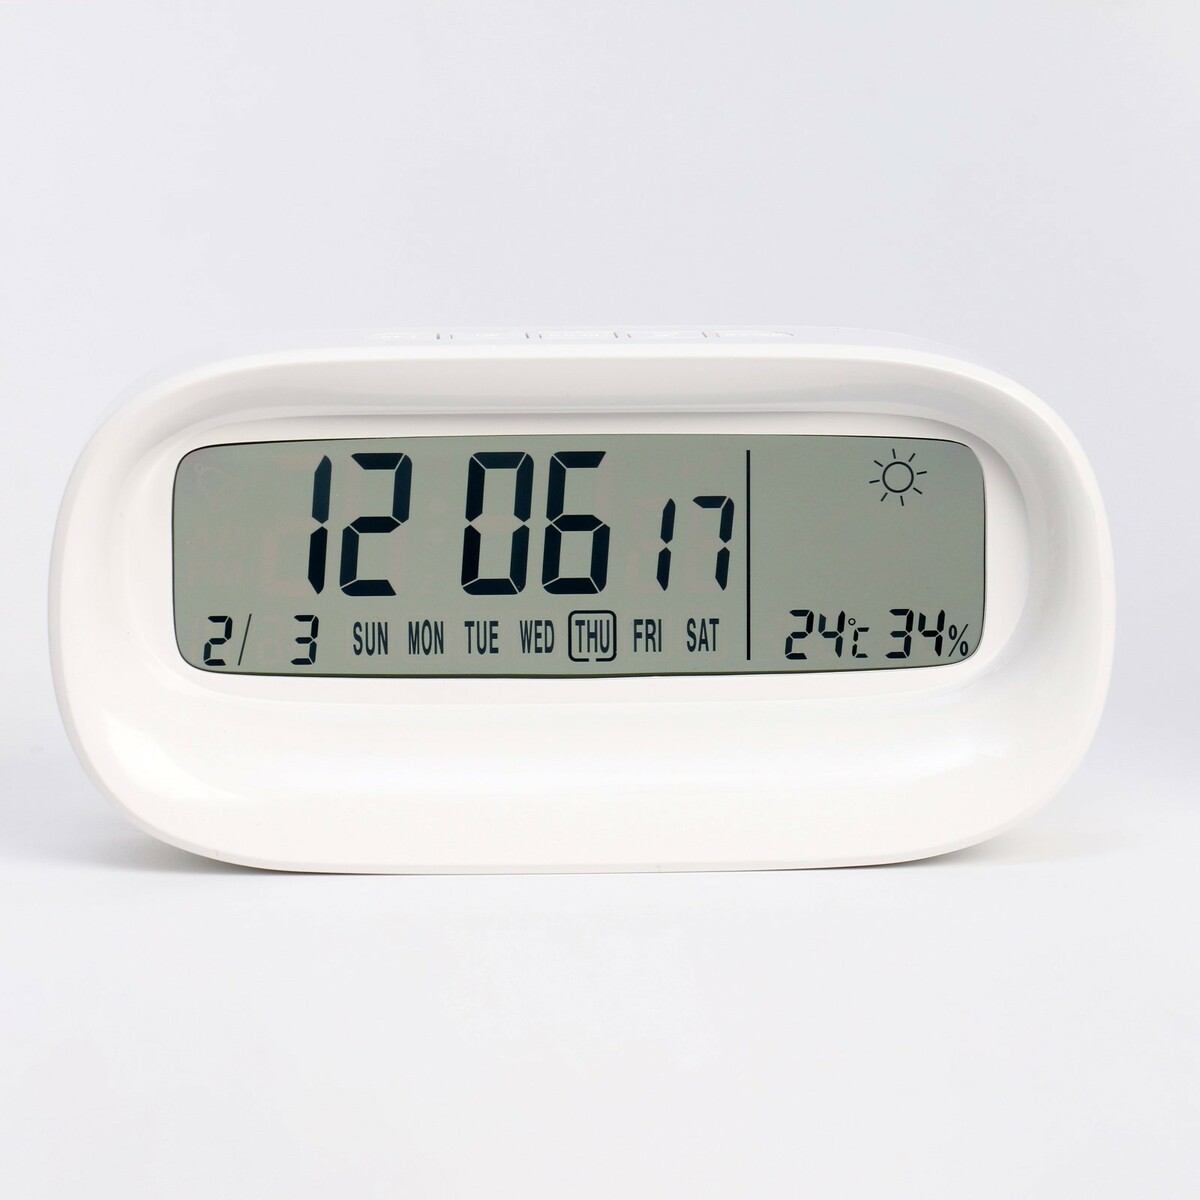 Часы - будильник электронные настольные c термометром, гигрометром, 7 х 14.5 см, 2ааа